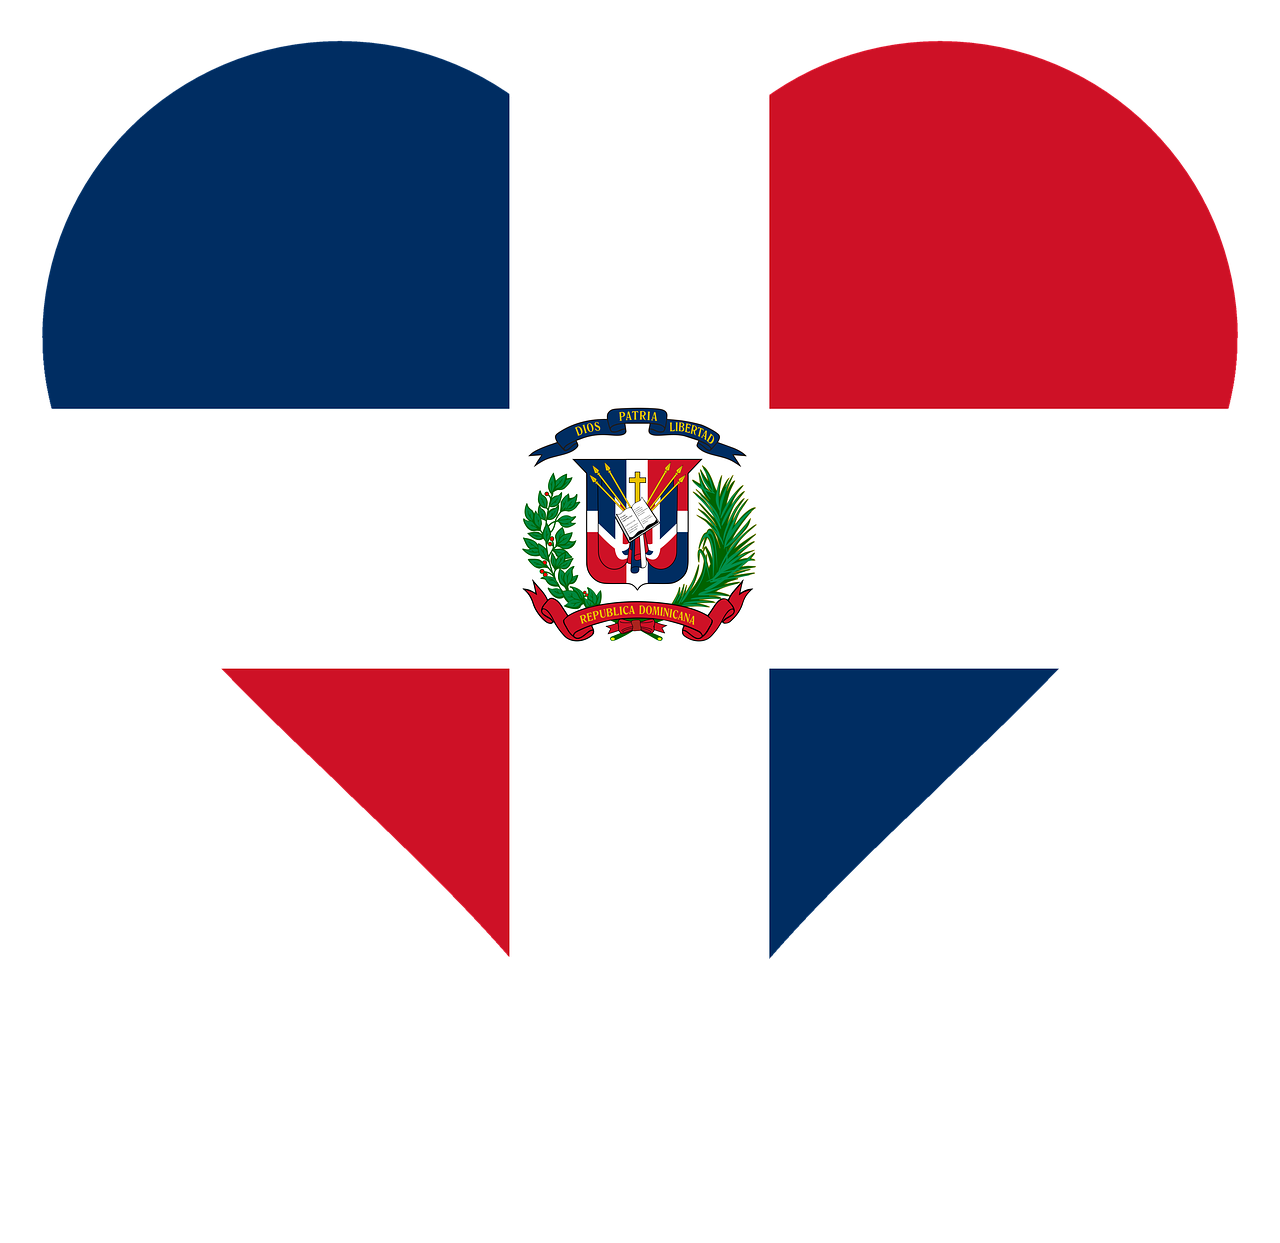 heart love dominican republic free photo